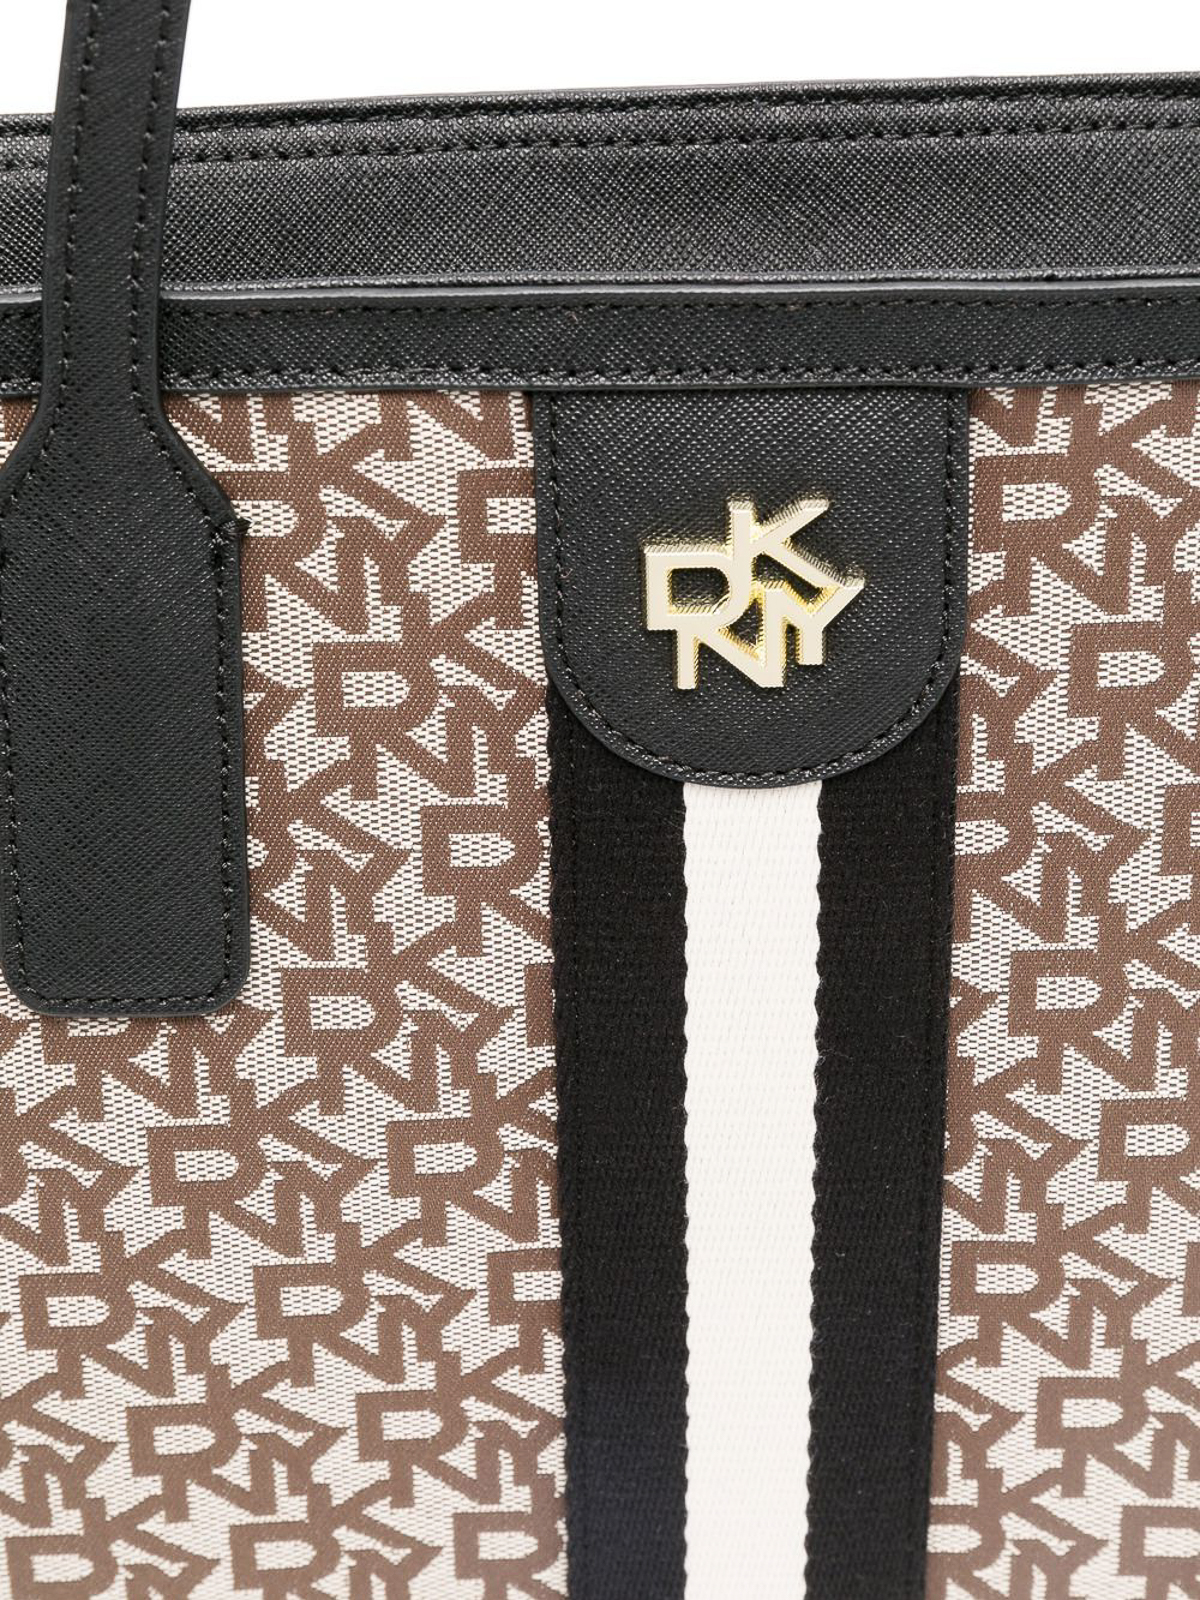 DKNY Medium Carol Black Logo Tote Bag